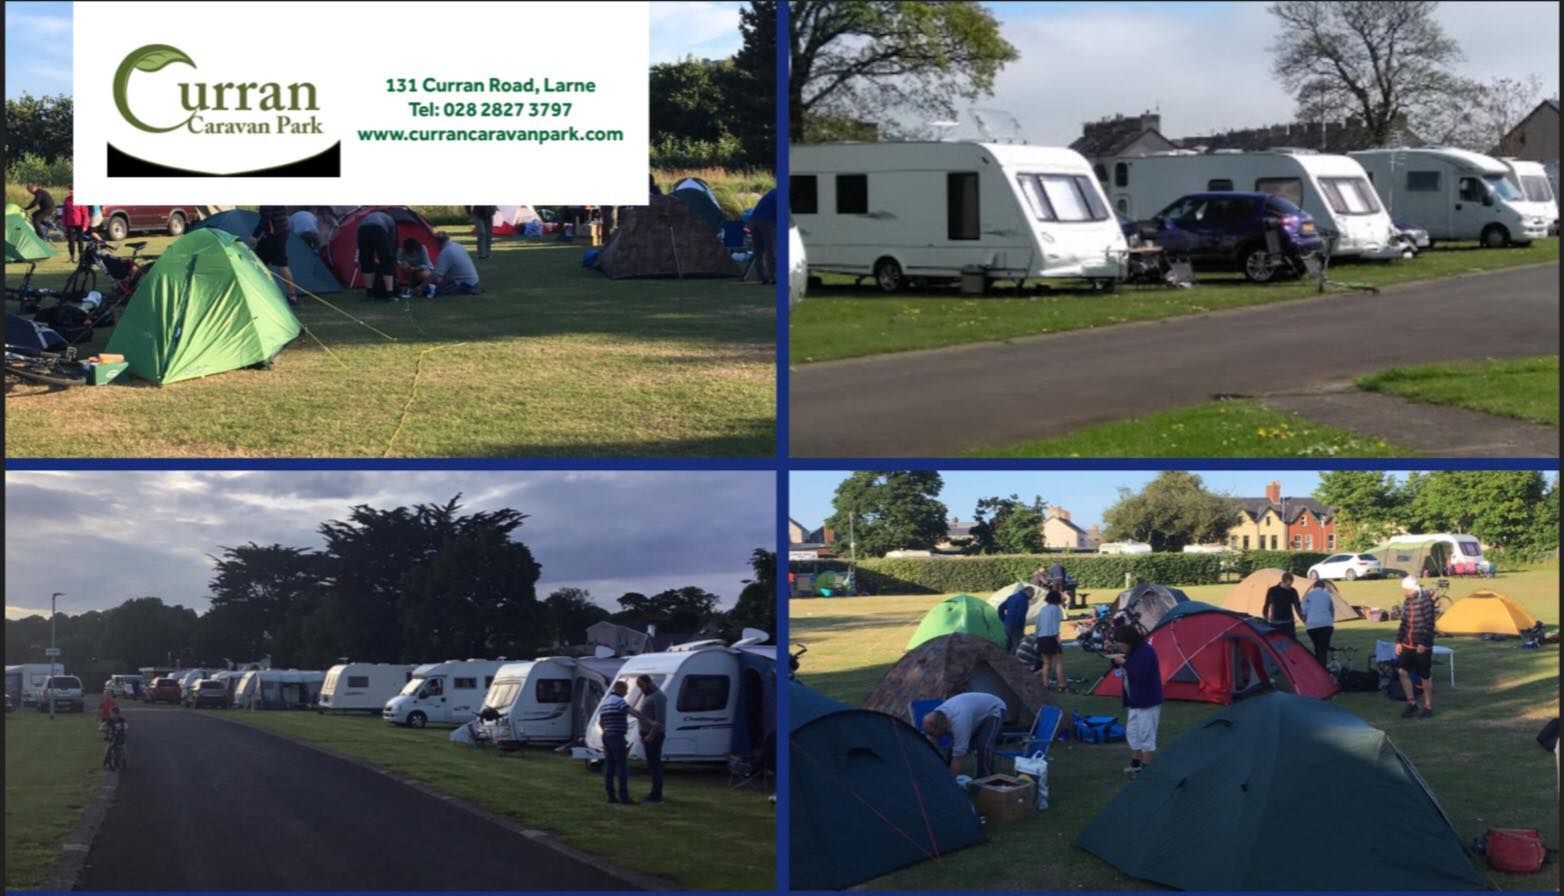 Curran Caravan Park May Bank holiday availability CampingNI